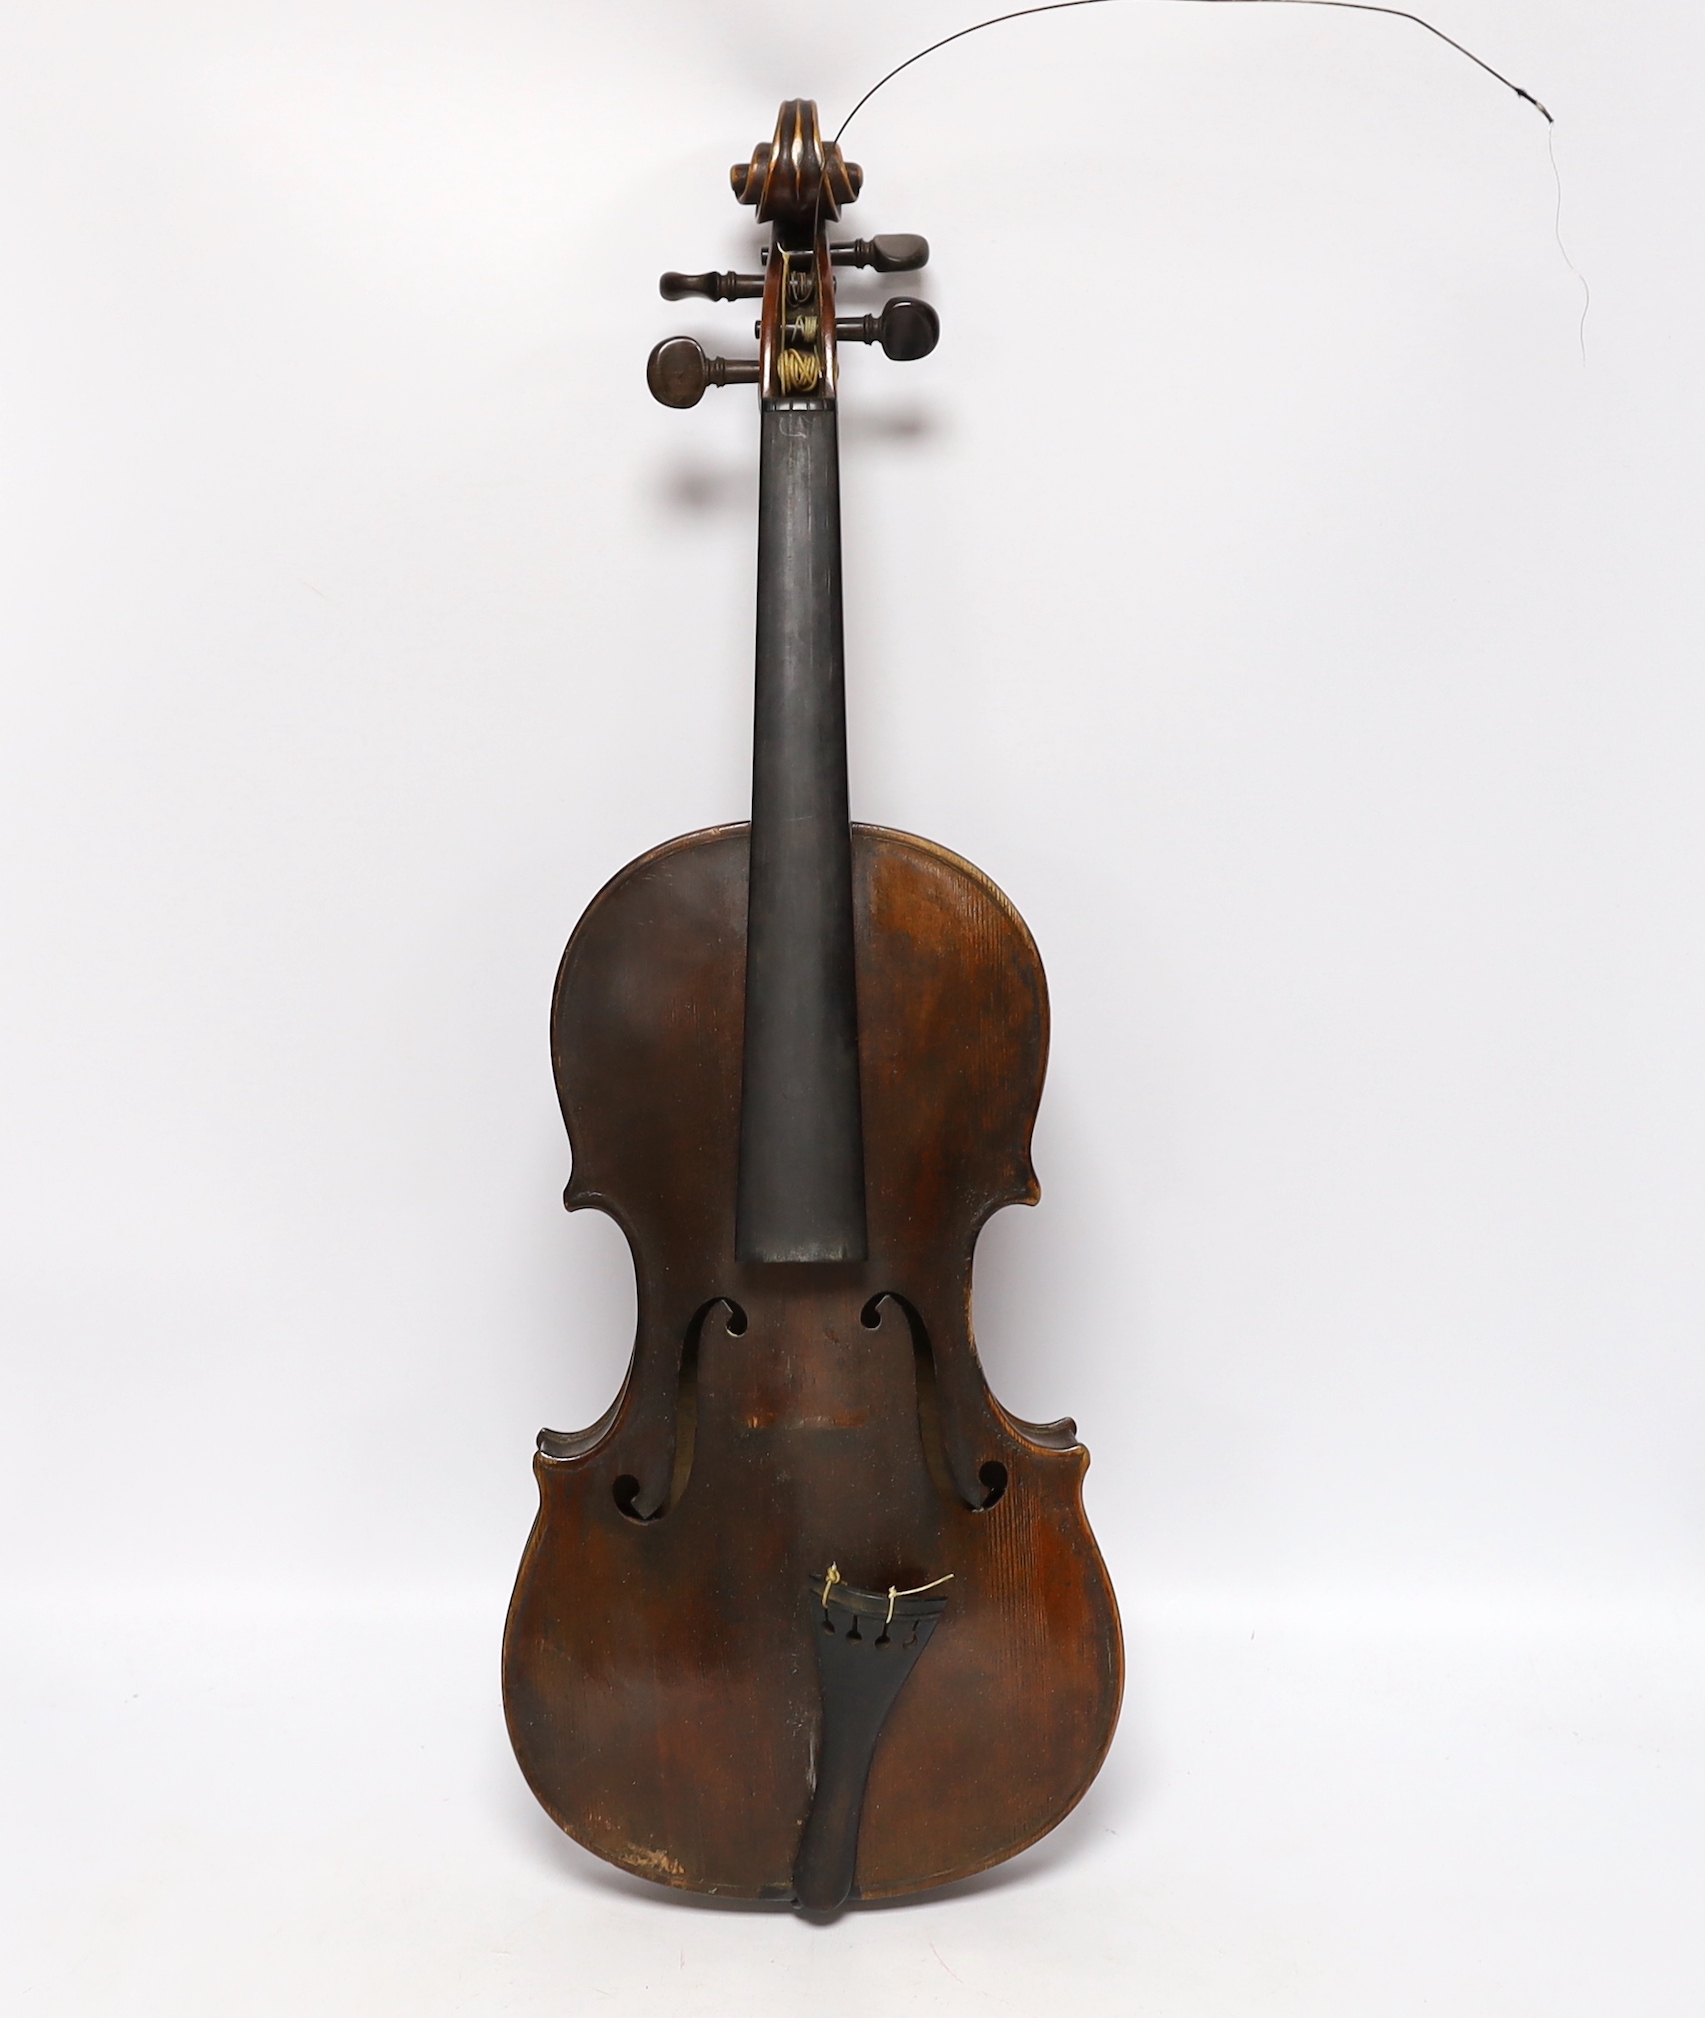 A 19th century English violin by George Craske